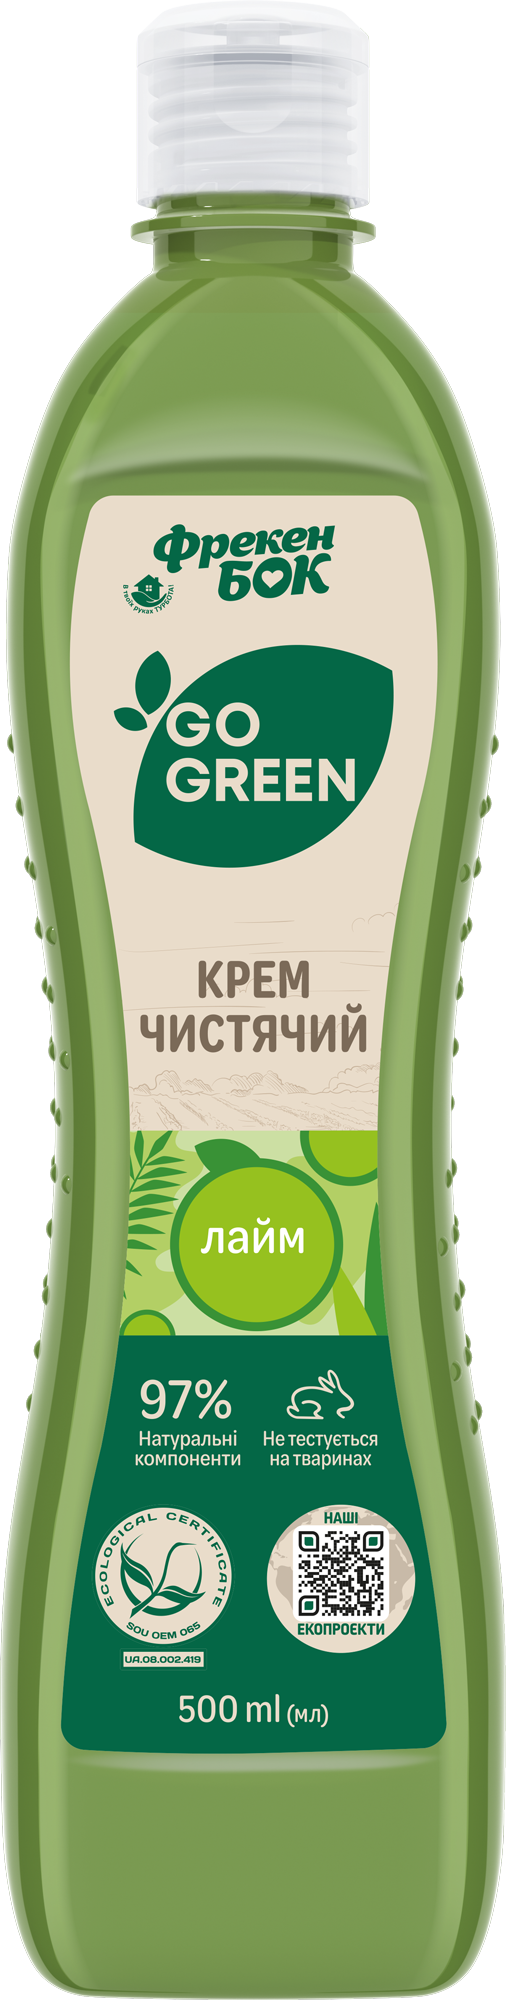 Універсальний чистячий крем Фрекен Бок Go Green Лайм, 500 мл - фото 1